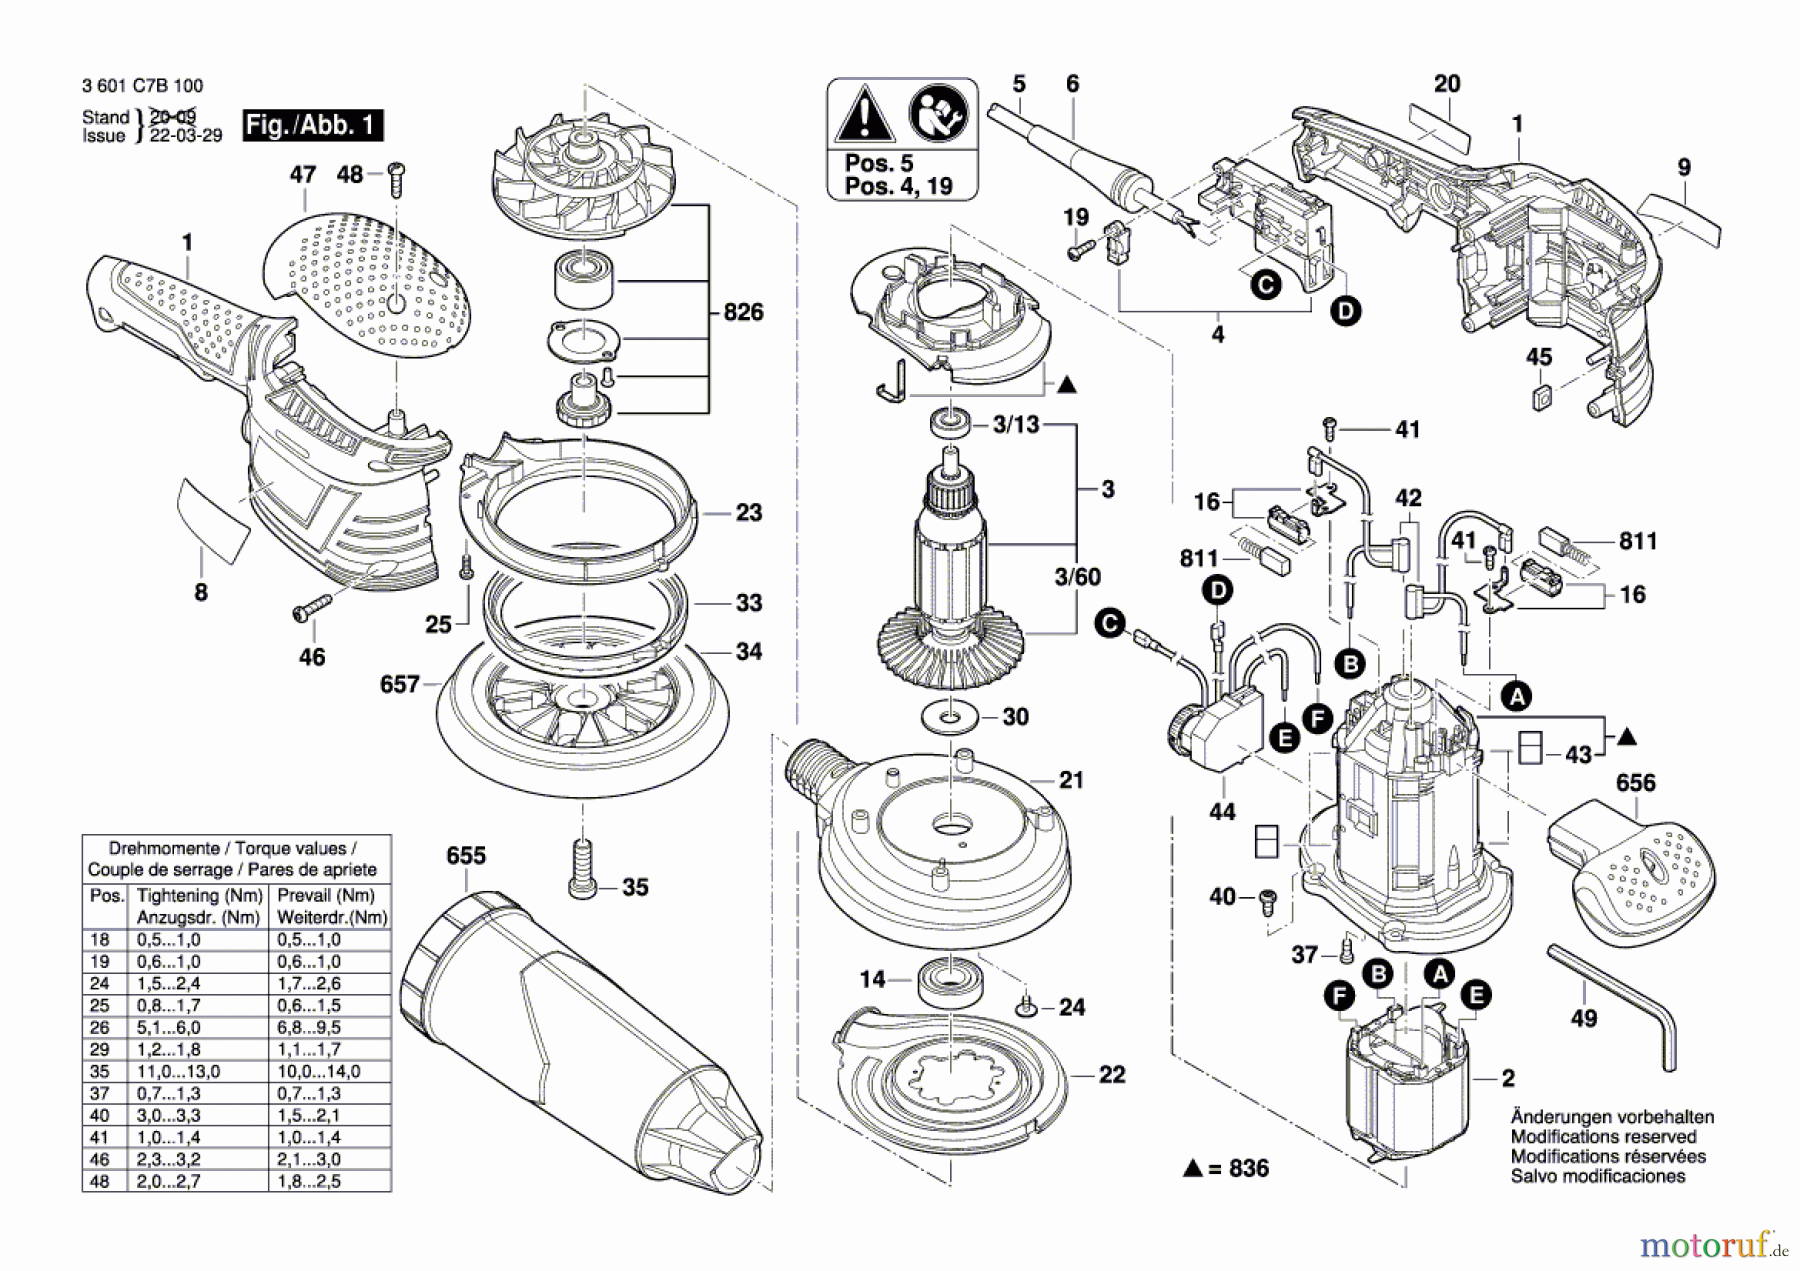  Bosch Werkzeug Exzenterschleifer EX 125-150 LV Seite 1